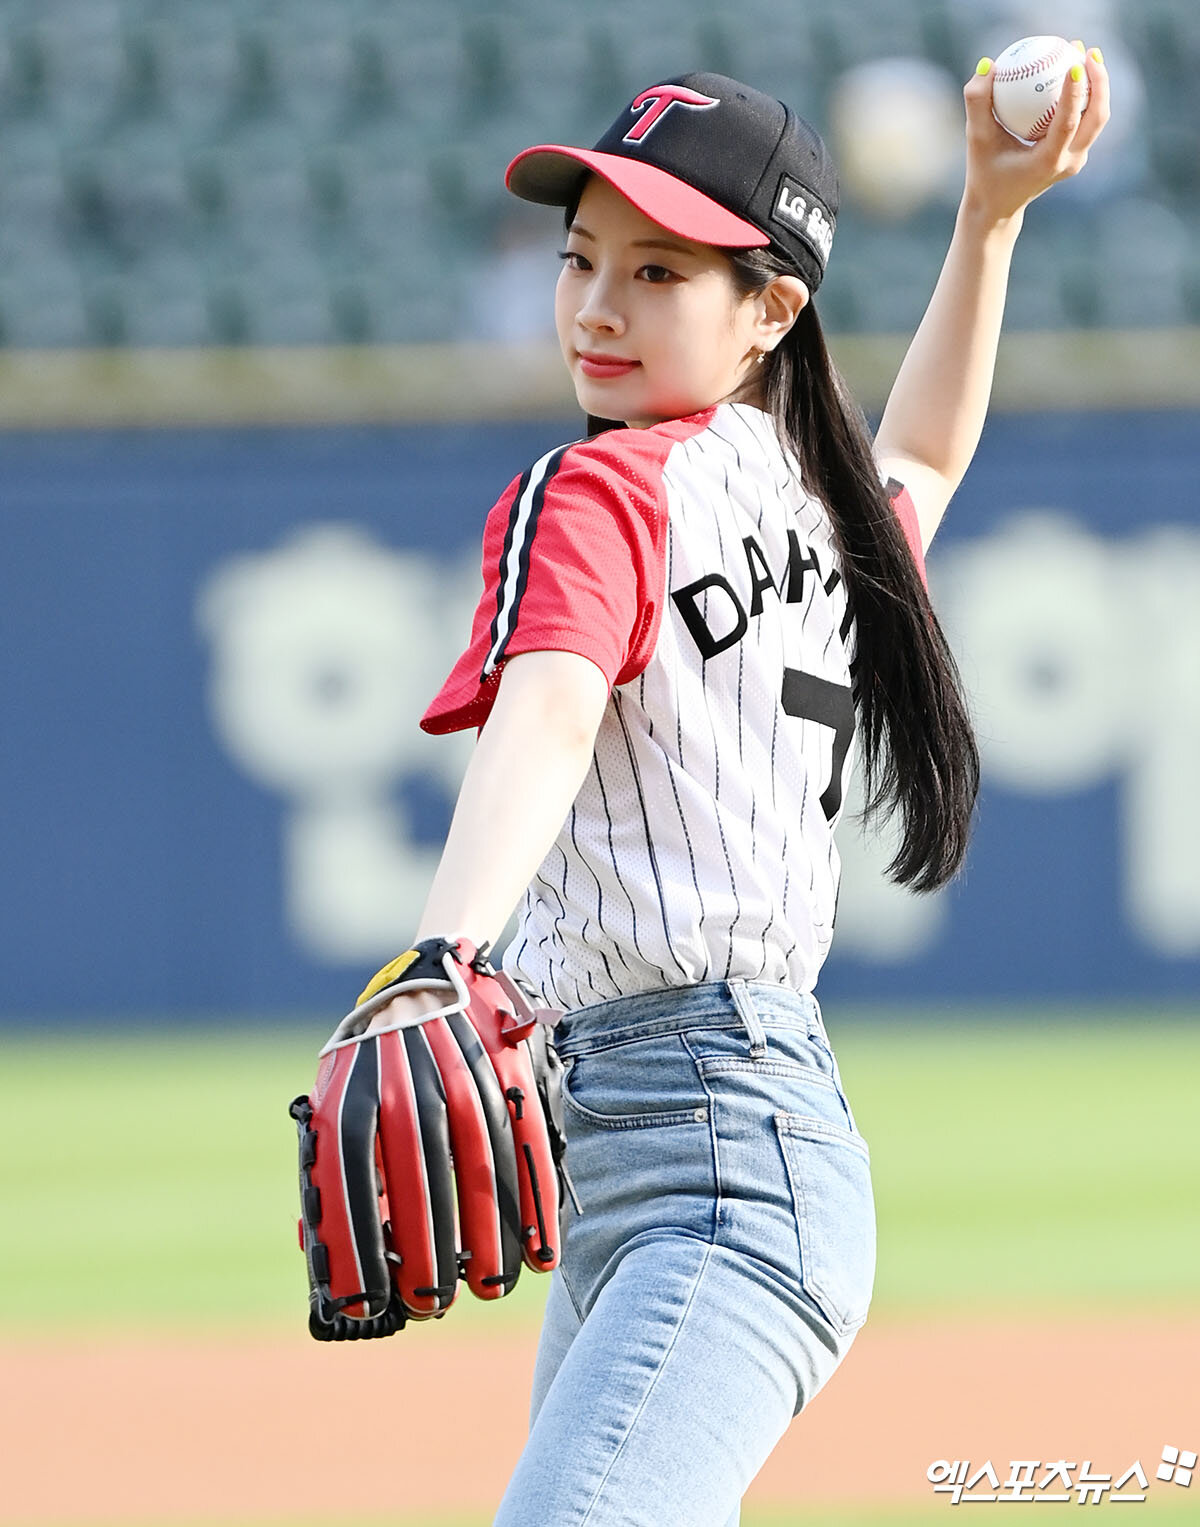 Baseball girl Dahyun ⚾️ #TWICE - Twice Laburi - 트와이스 라